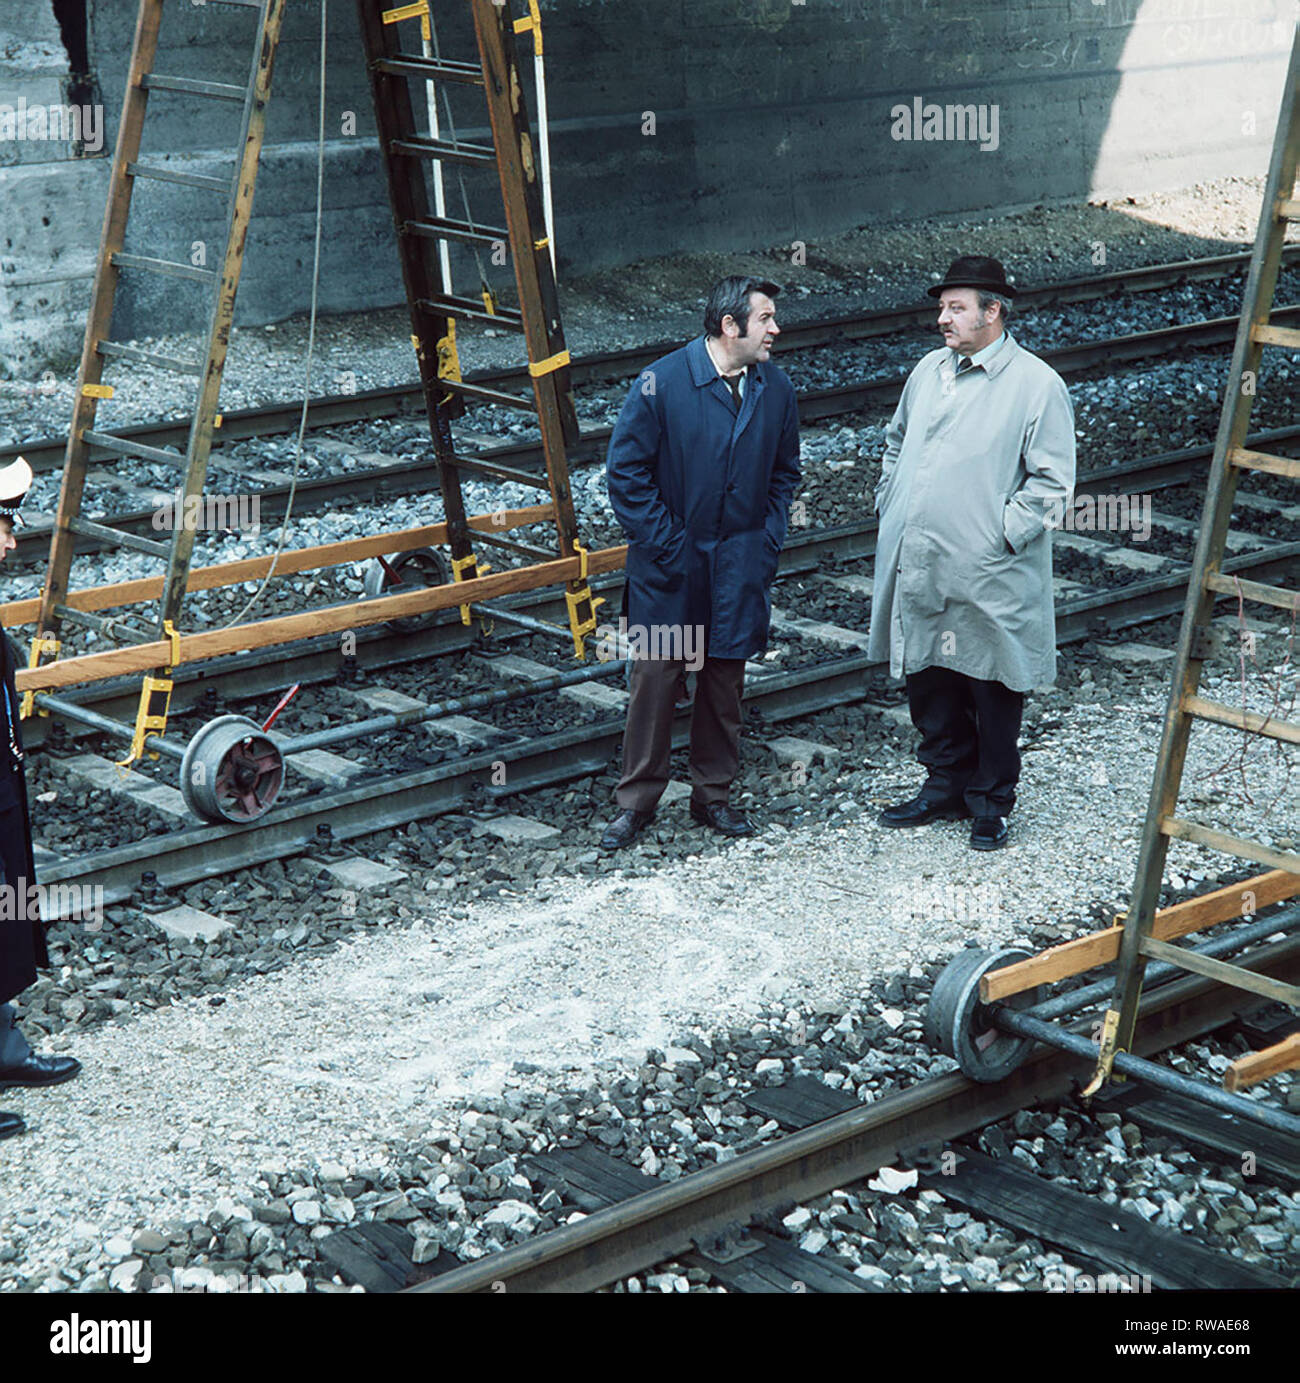 TATORT / Wohnheim Westendstraße / Kommissar Veigl ermittelt im Fall eines Betriebsunfalls mit Todesfolge auf einem Bahngelände. Dabei kommt er Schwarzarbeitern auf die Schliche... / Szene mit KM Brettschneider (WILLY HARLANDER) und Veigl (GUSTL BAYRHAMMER). / , 07DFAARDTAT2 / Überschrift: TATORT / BRD 1976 Stock Photo